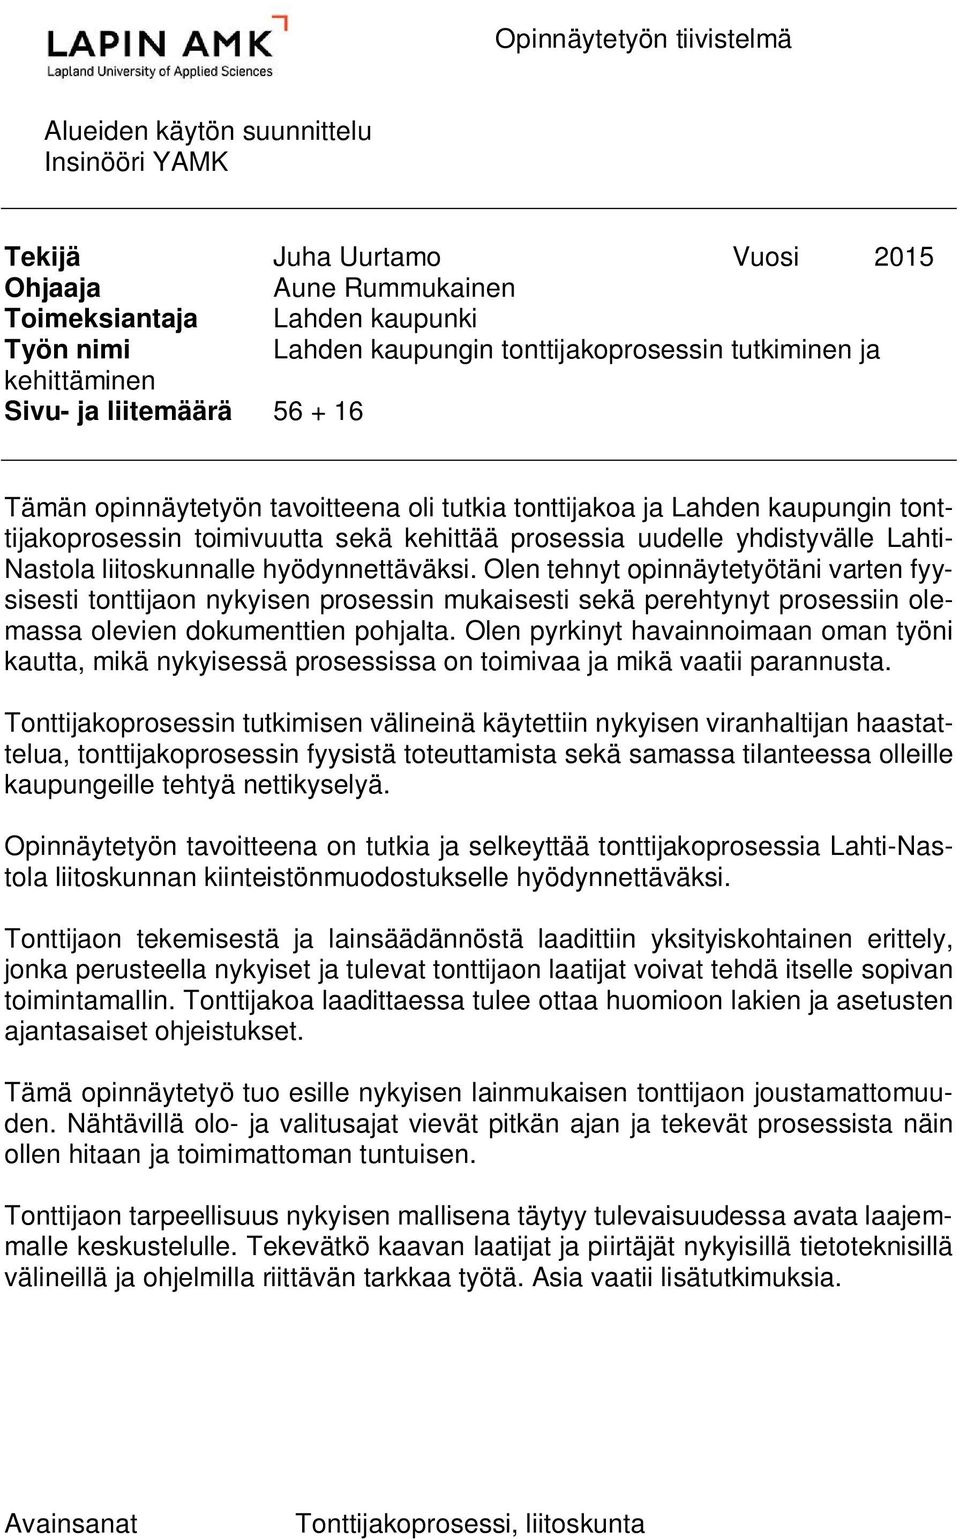 prosessia uudelle yhdistyvälle Lahti- Nastola liitoskunnalle hyödynnettäväksi.